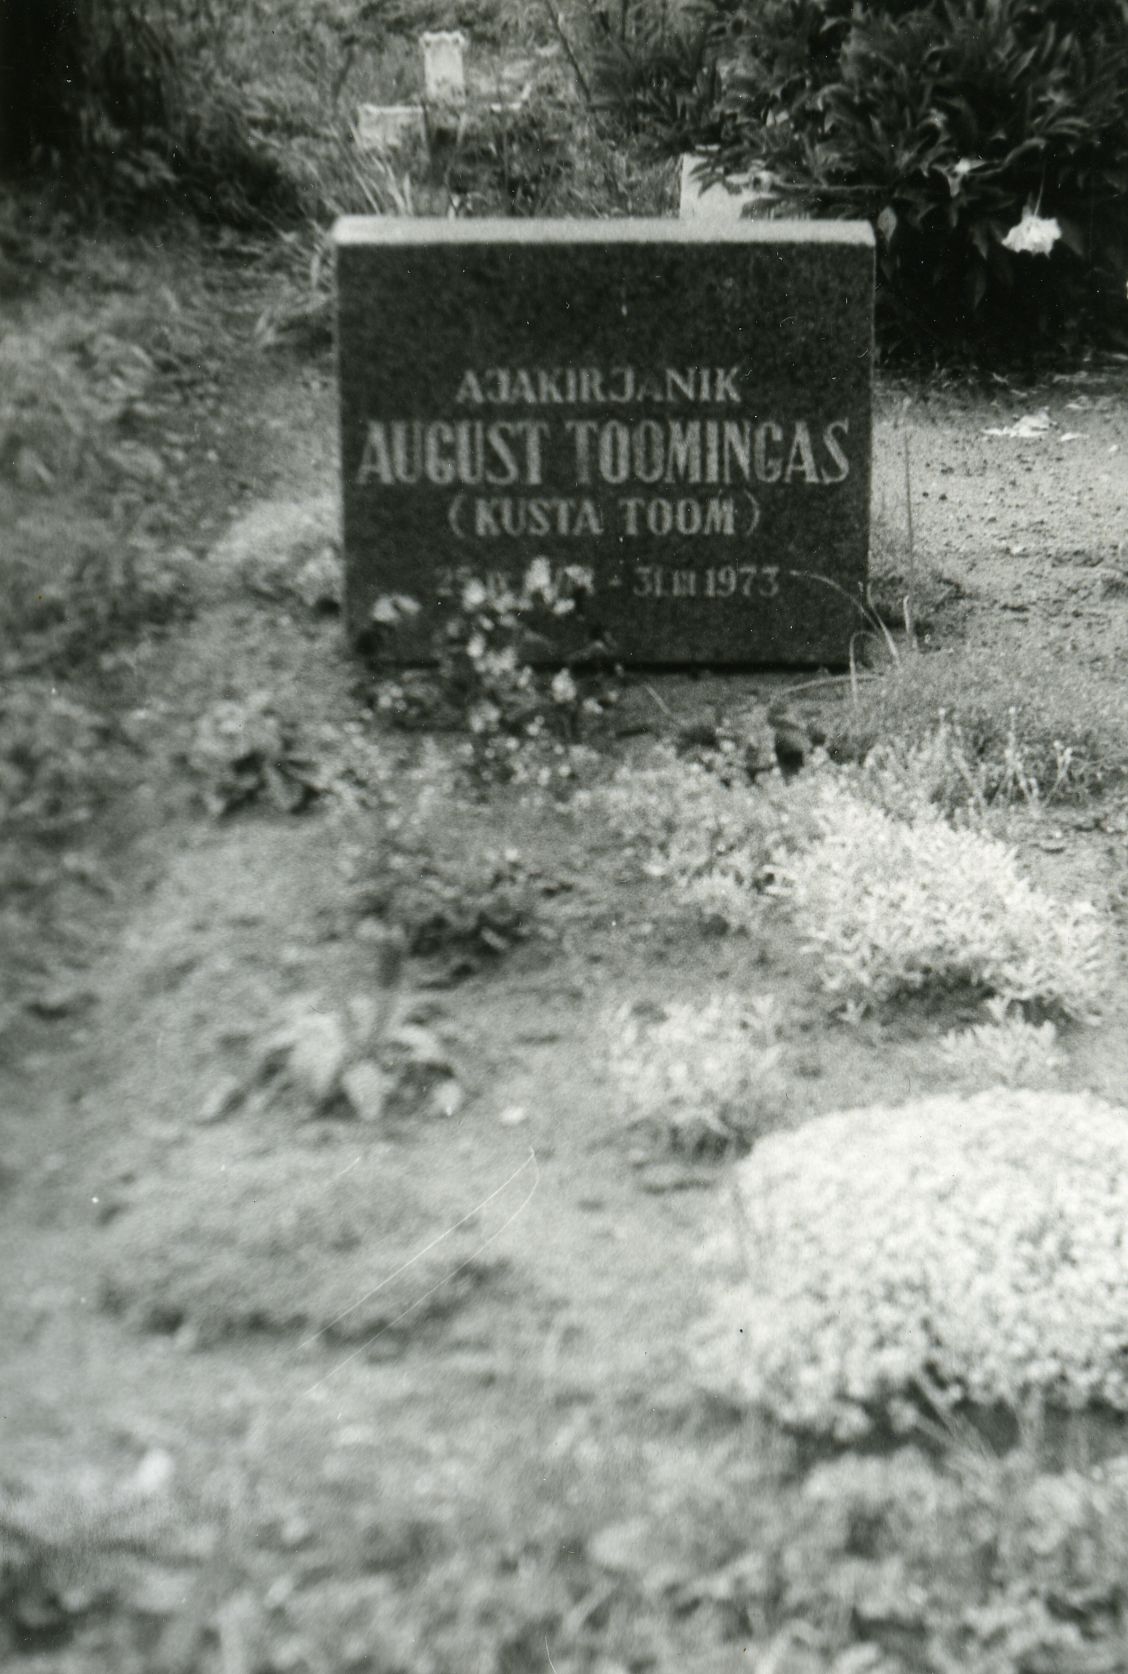 August Toomingas (Kusta Toom) grave on Rõngu cemetery